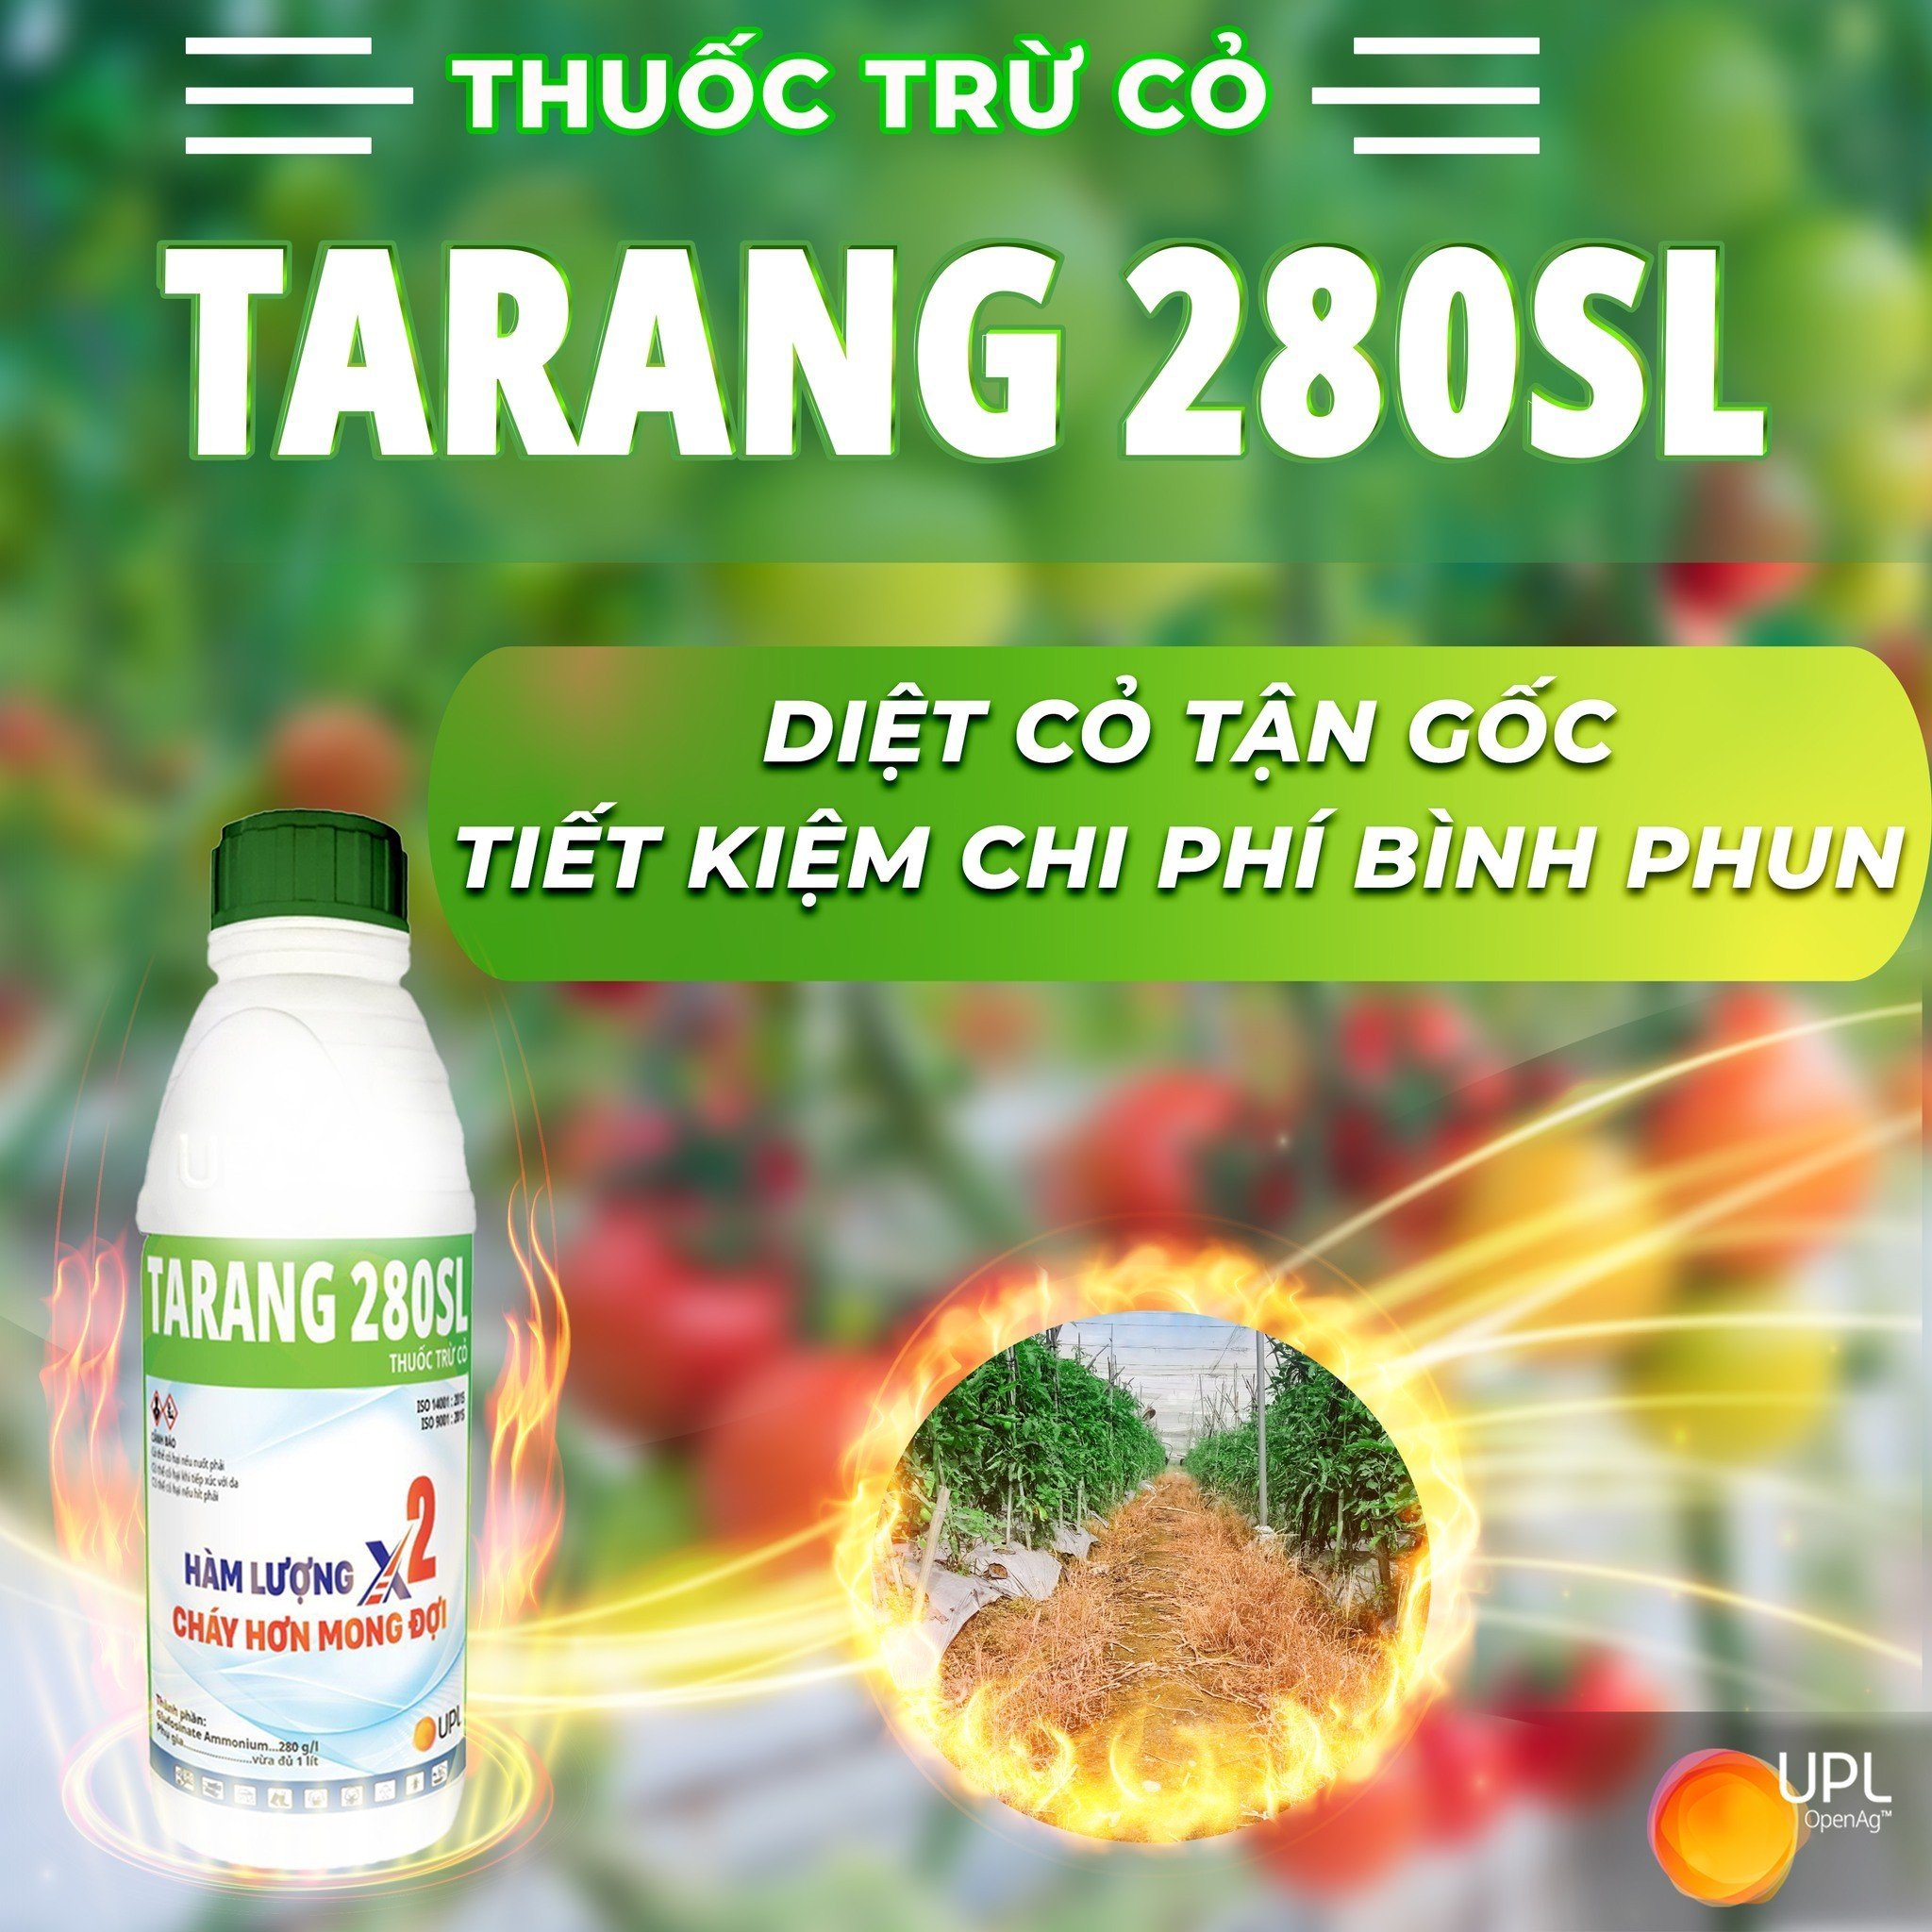 Thuốc trừ cỏ Tarang 280SL - Chai 900ml